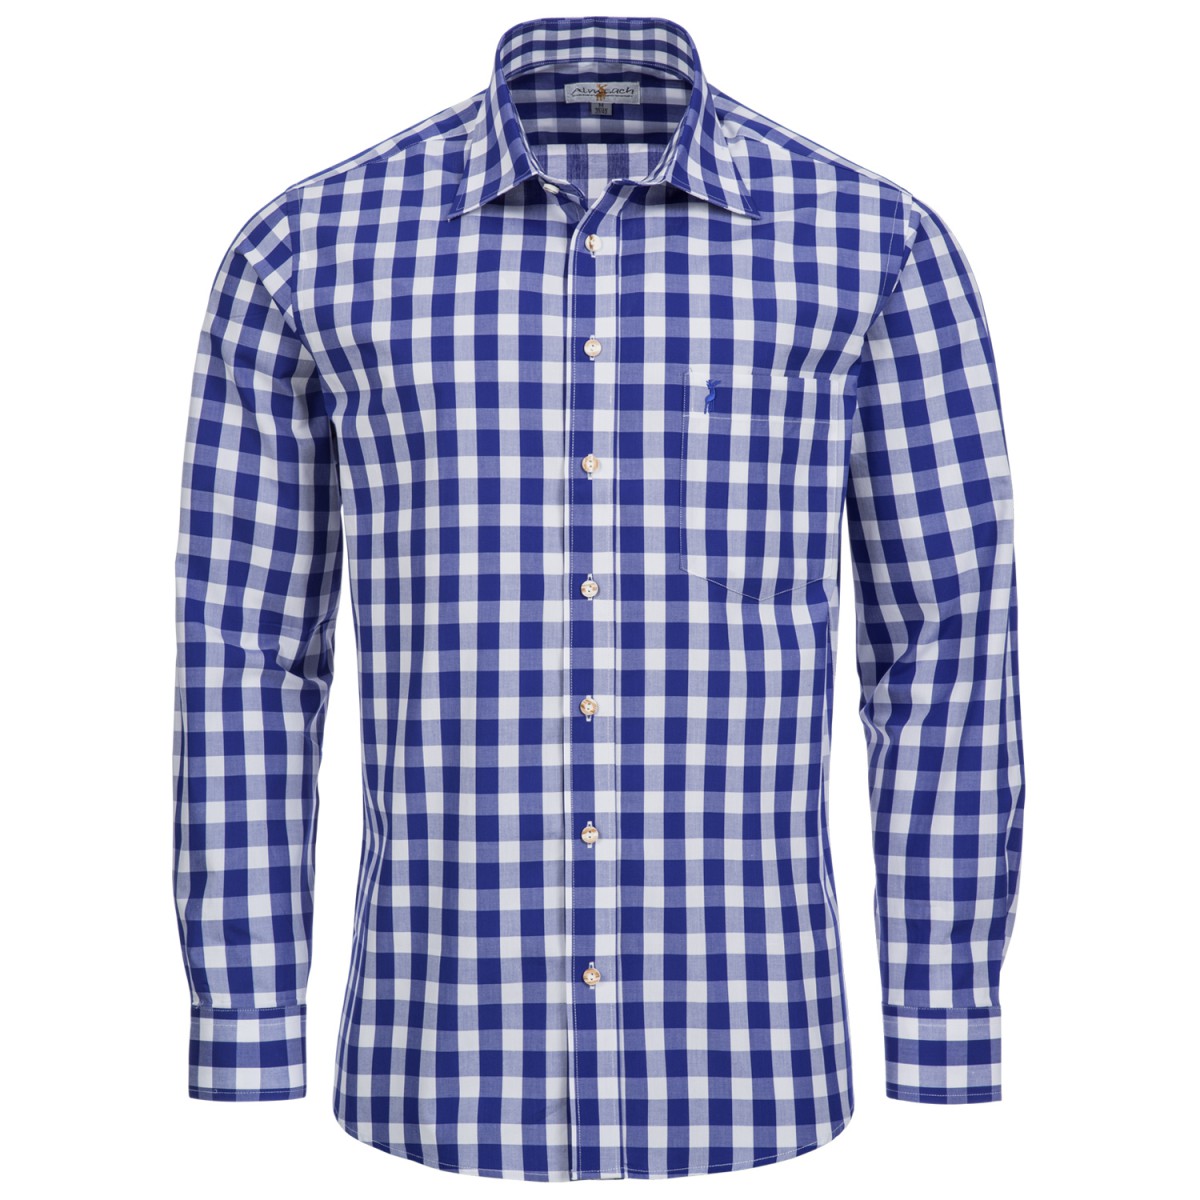 Trachtenhemd Beppo Regular Fit zweifarbig in Hellblau und Dunkelgrün von Almsach 